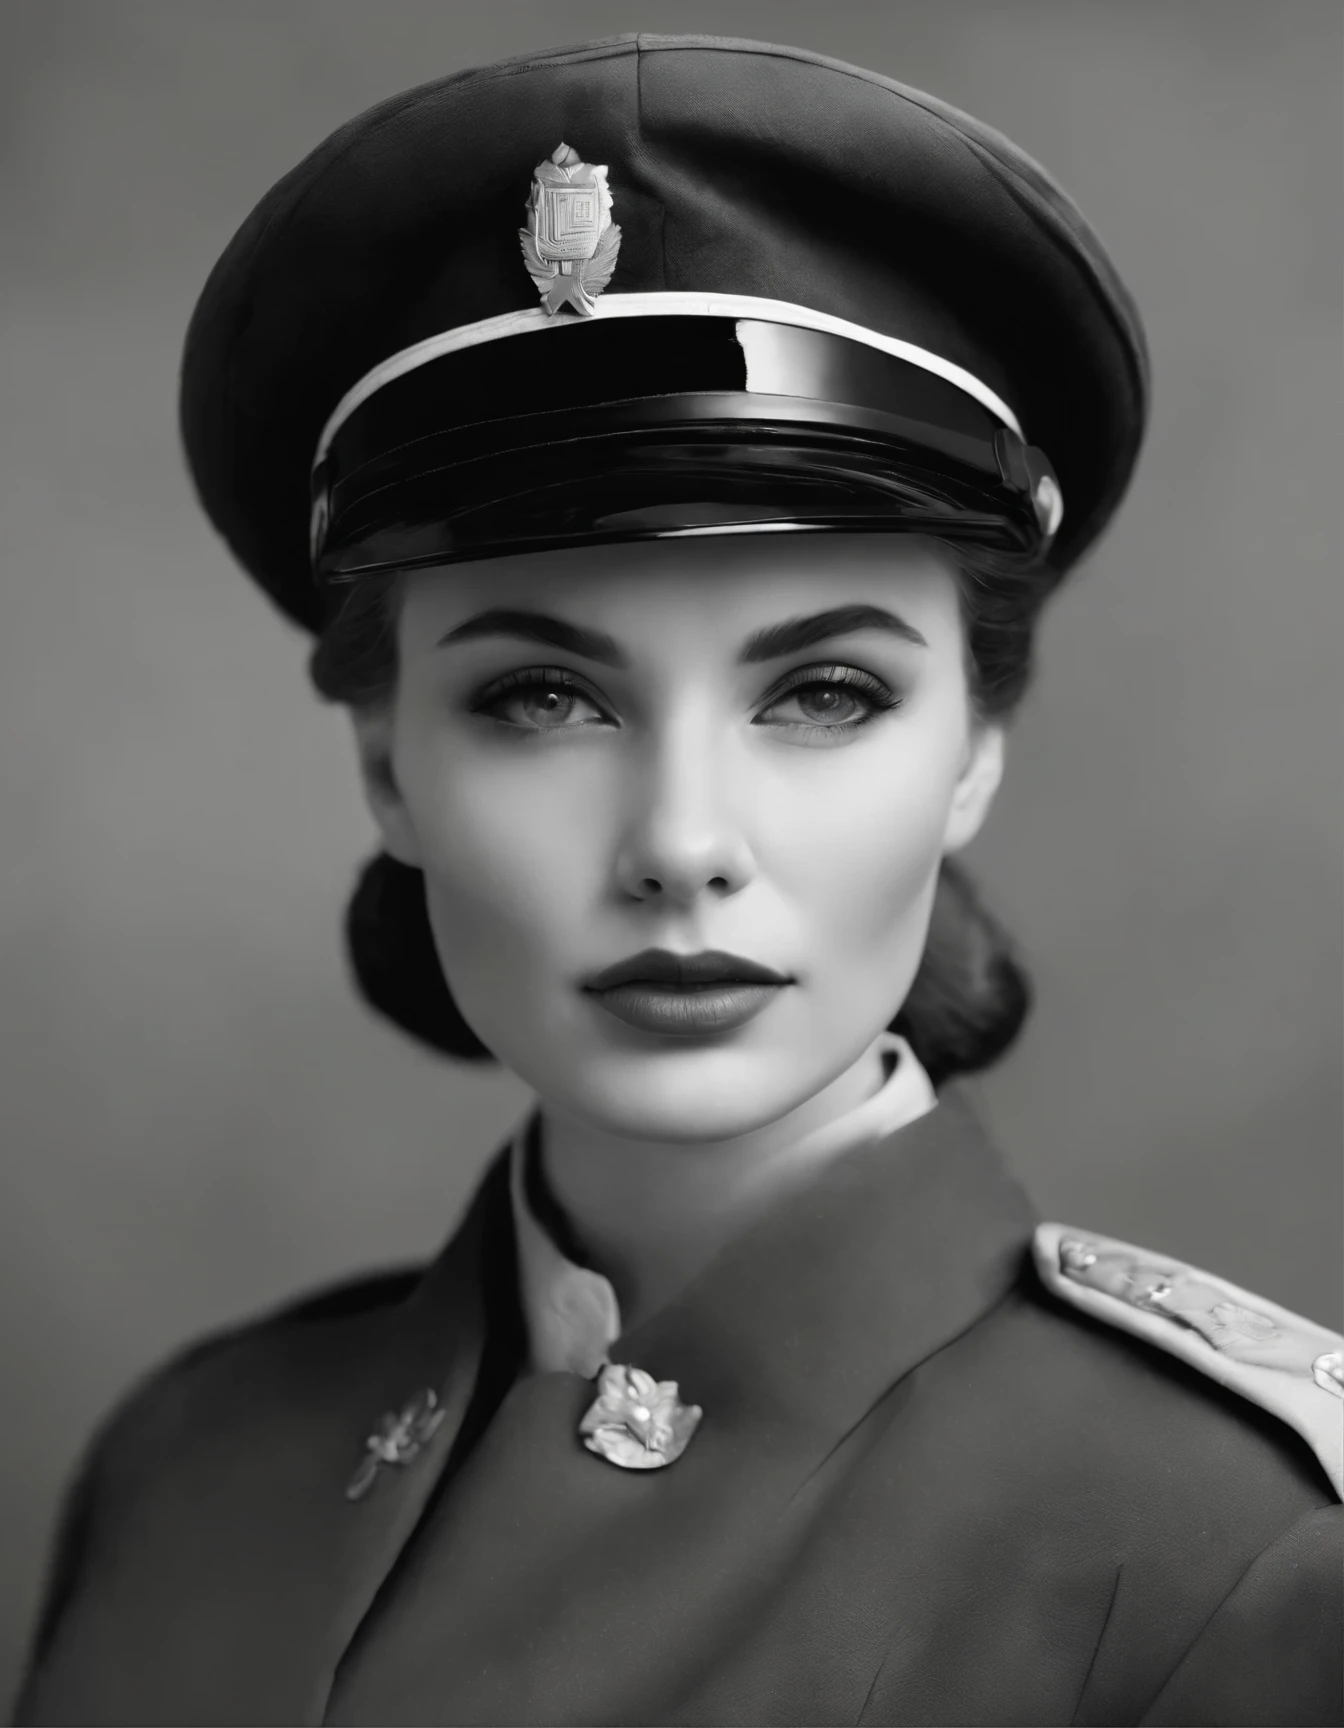 一張身穿制服、戴著帽子的女人的黑白照片, 第二次世界大戰年輕女士兵, 士兵女孩的肖像, 女戰士的肖像, 作者：贝拉·孔多尔, 灵感来自维奥莱特·奥克利, 通过埃尔西·费夫, 李·米勒, 瑪麗亞潘菲洛娃, 作者：拉萨尔·西格尔, 作者未知, 柴油龐克士兵女孩, 通过多萝西·可乐